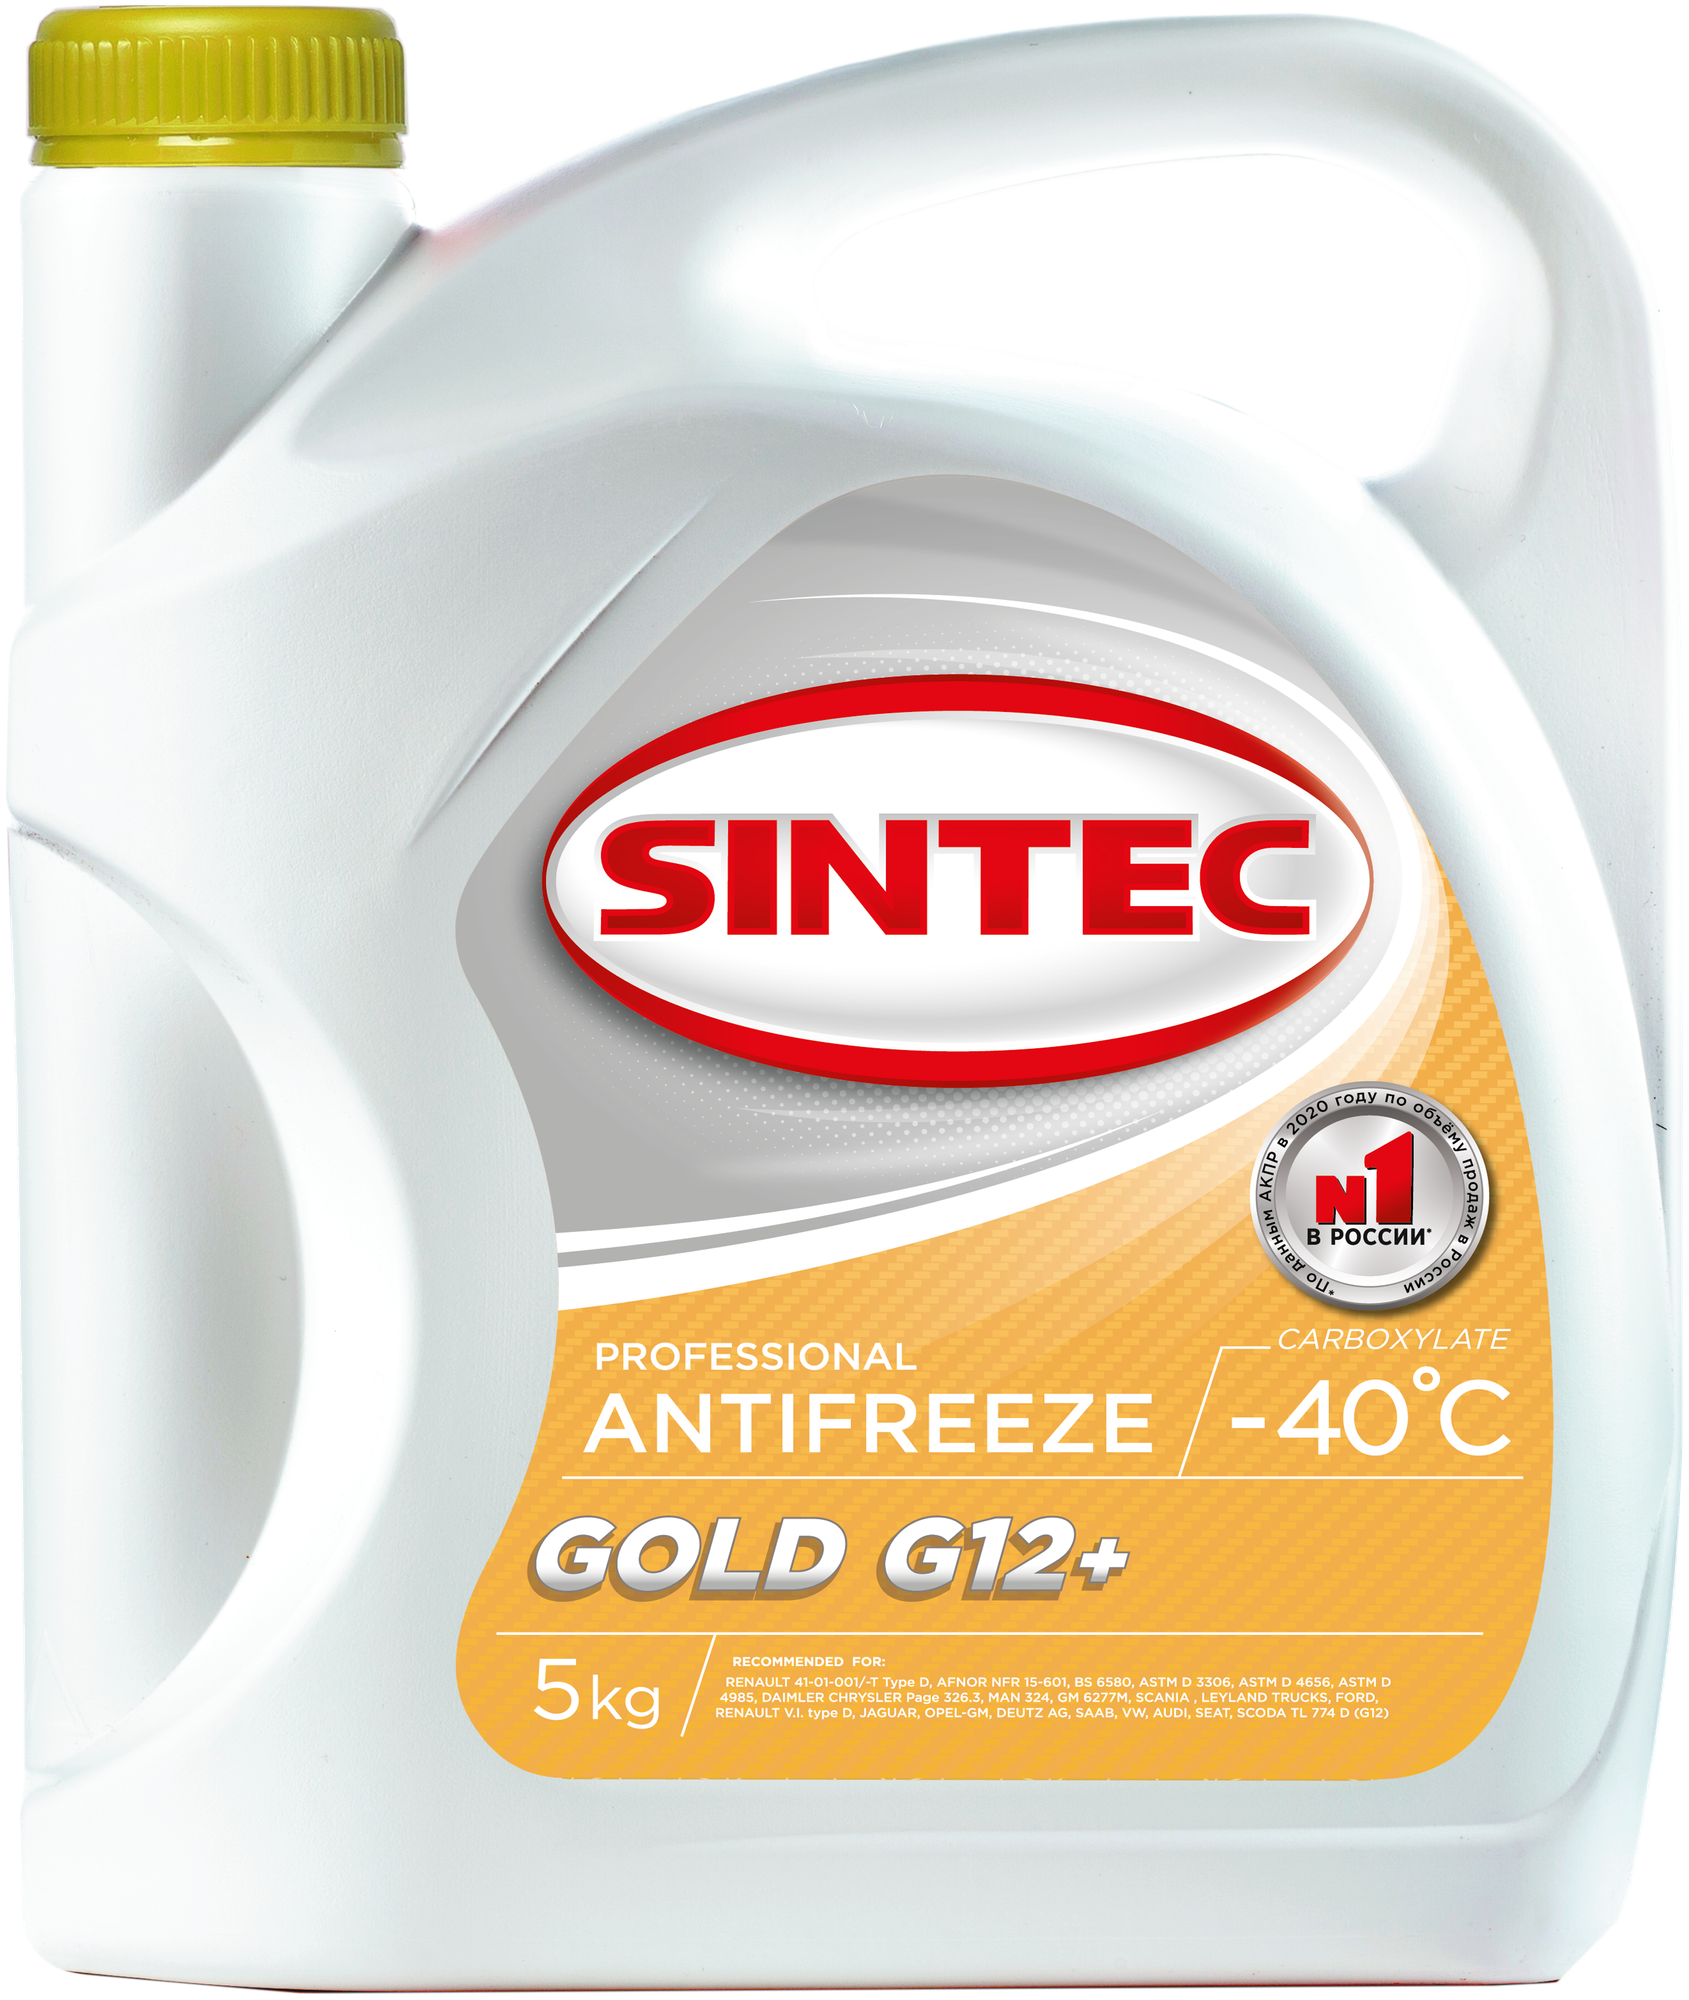 SINTEC 990558 Антифриз Sintec Gold G12+ yellow -40 5кг 990558